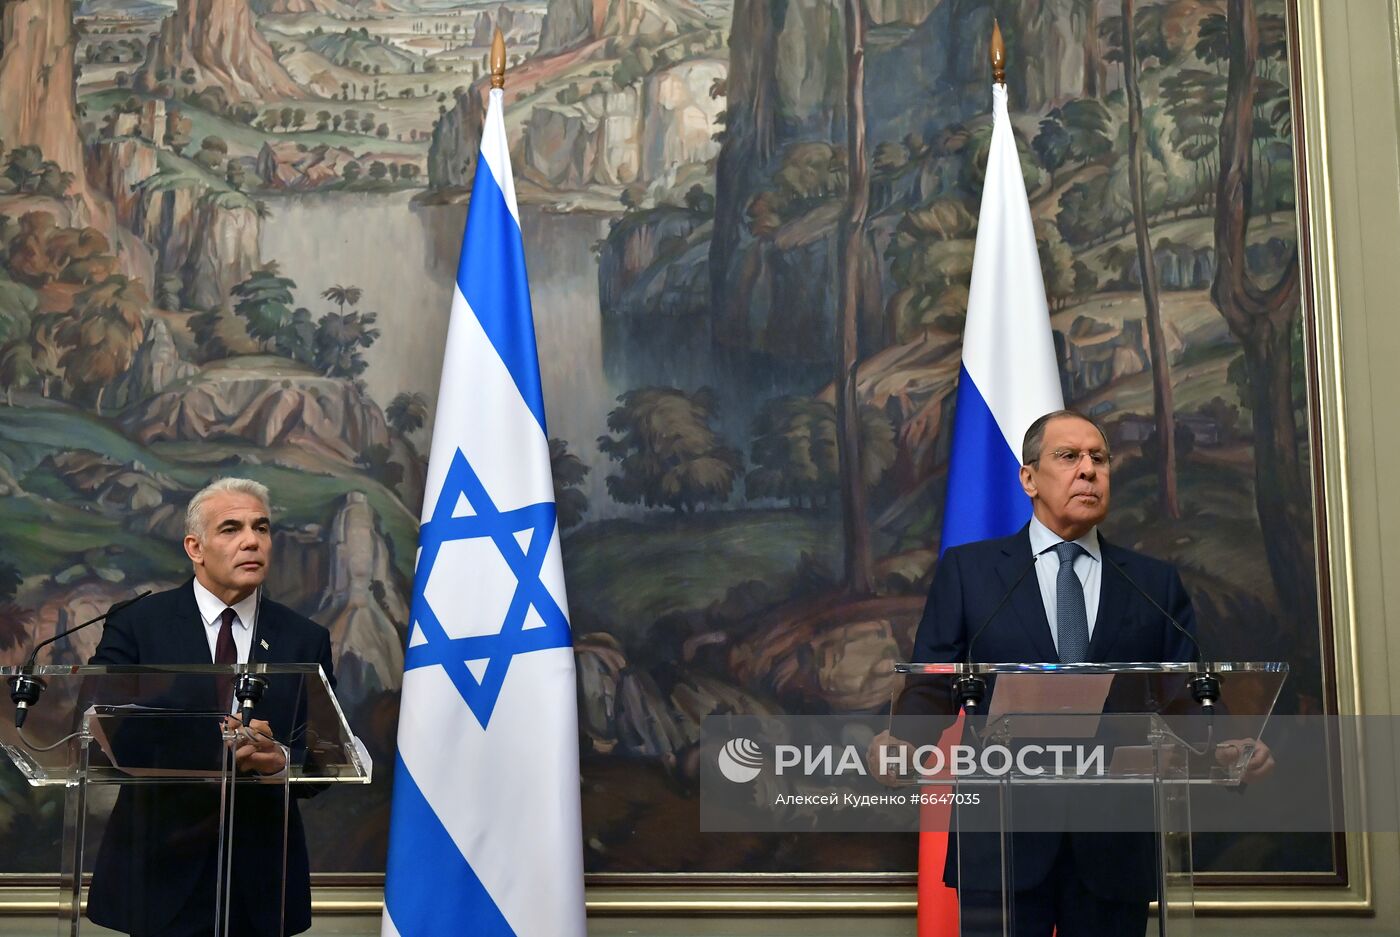 Встреча министров иностранных дел РФ и Израиля С. Лаврова и Я. Лапида